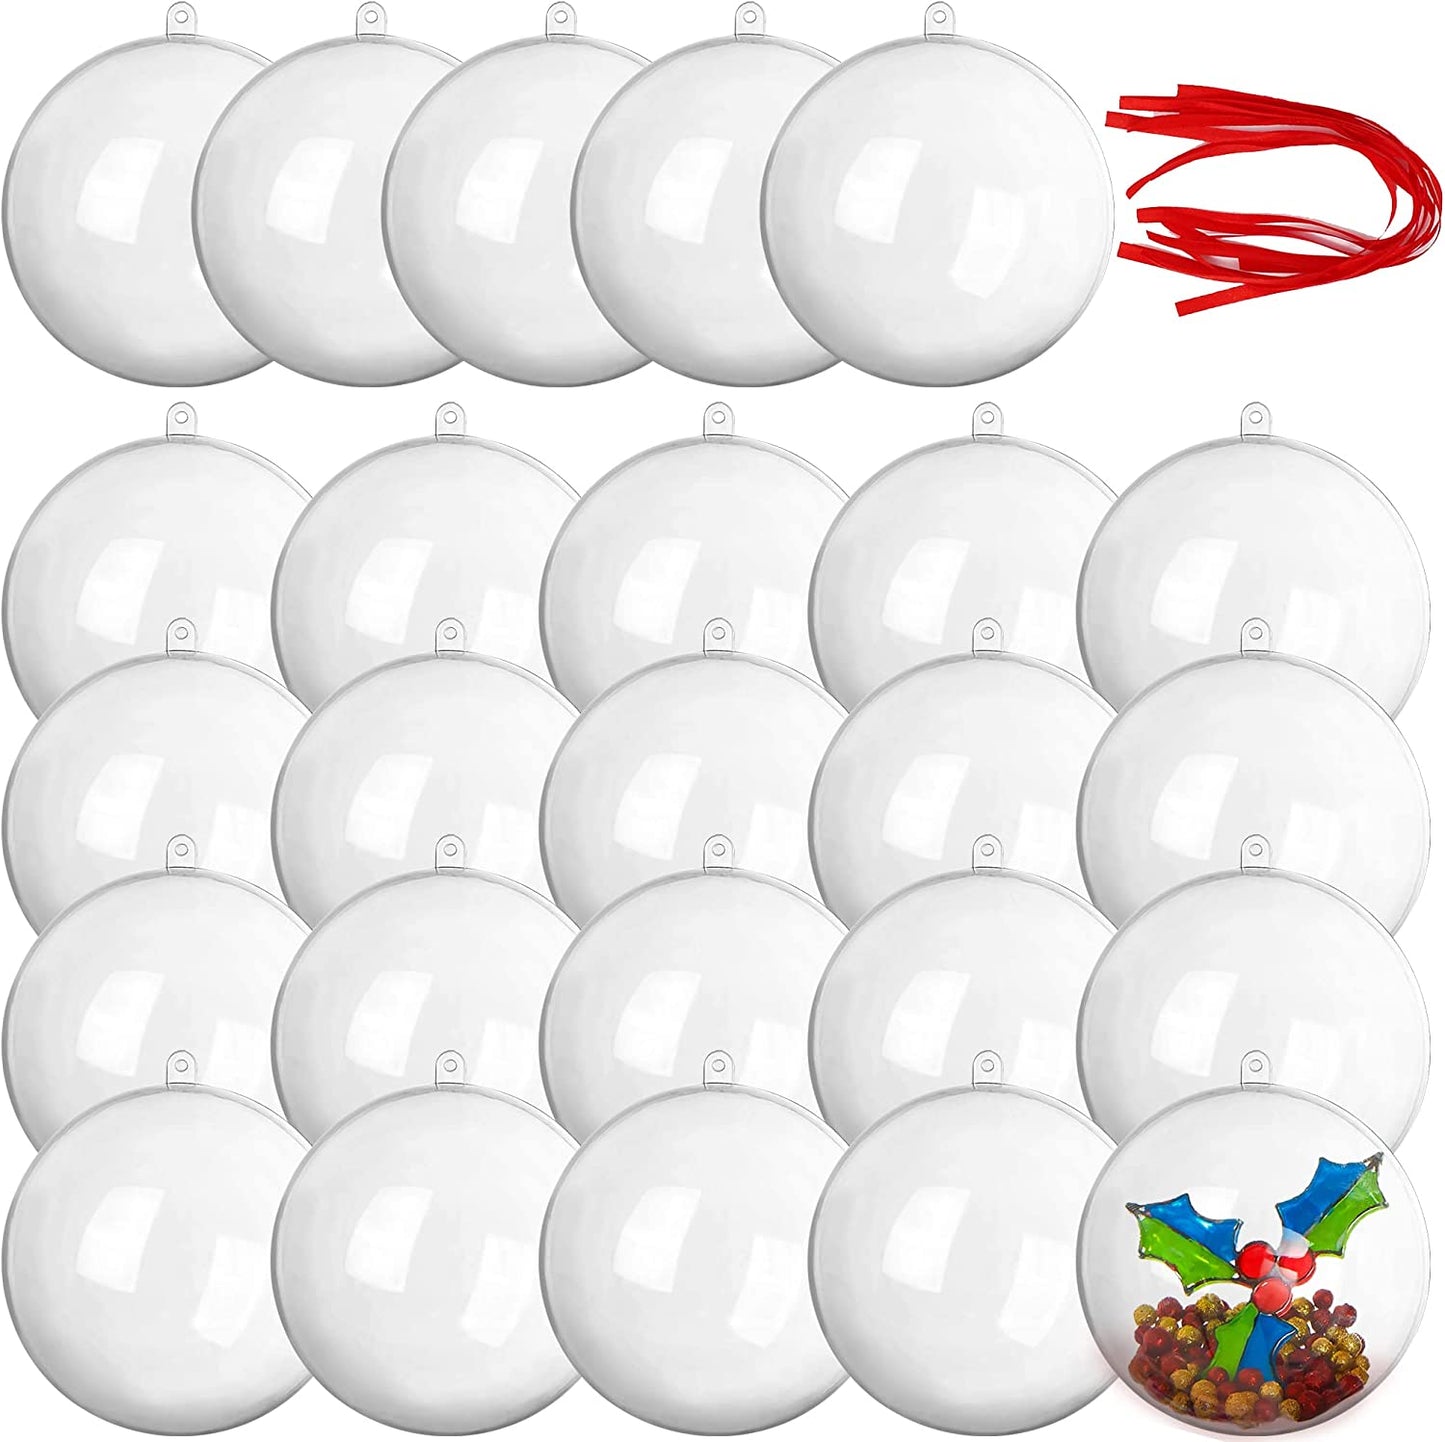 20Pcs Clear Plastic Ball Ornaments 2.76in